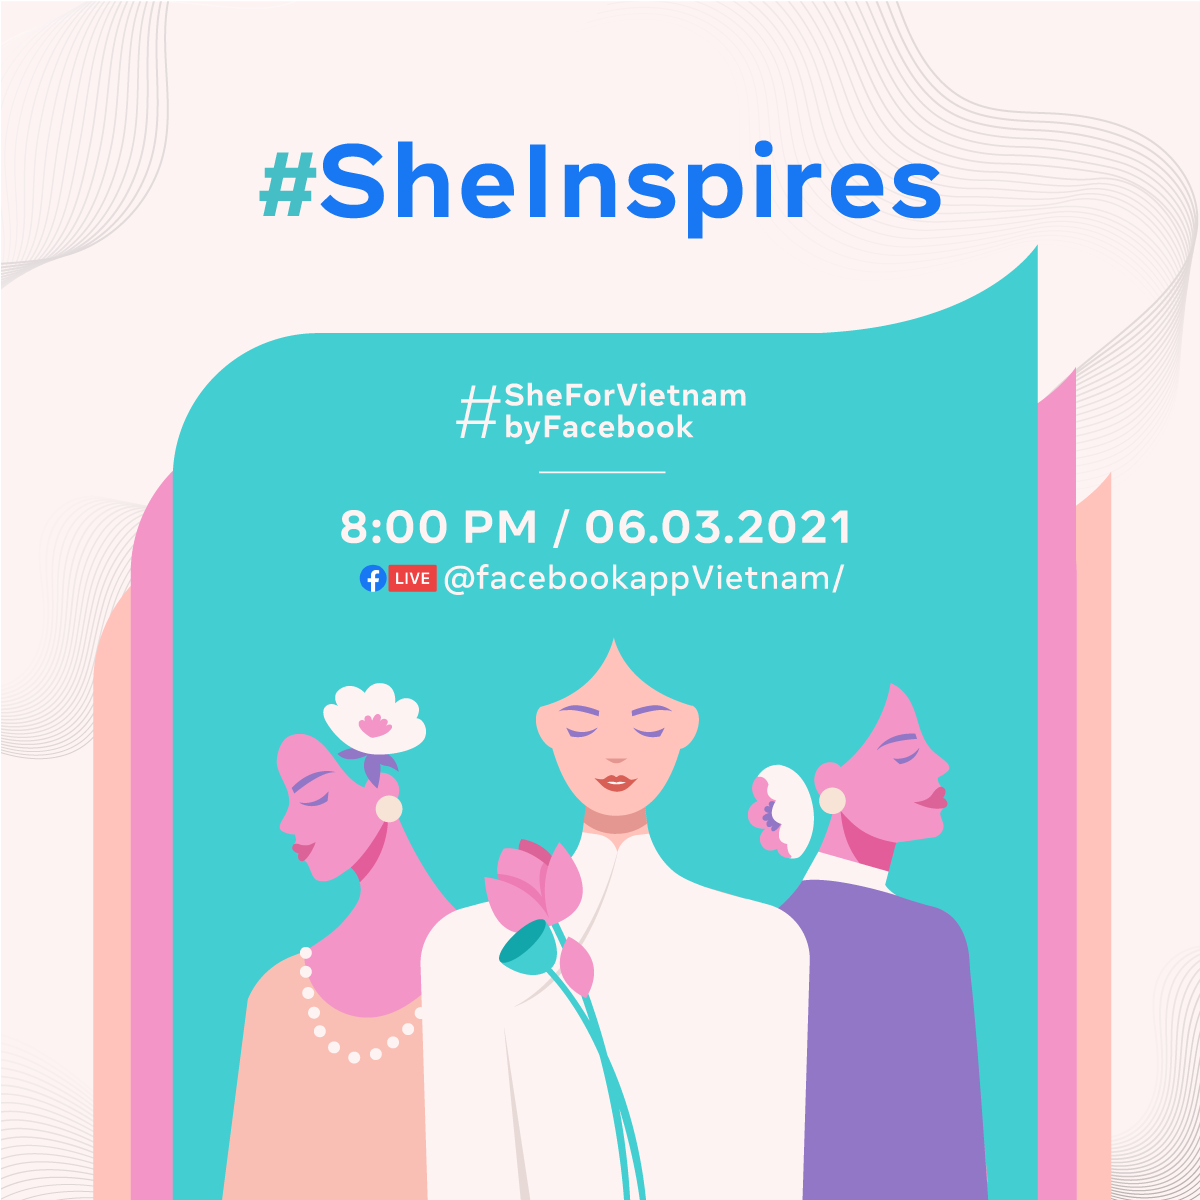 Facebook ra mắt chương trình #SheForVietnam nhằm tiếp thêm sức mạnh cho phụ nữ Việt trong thời đại số